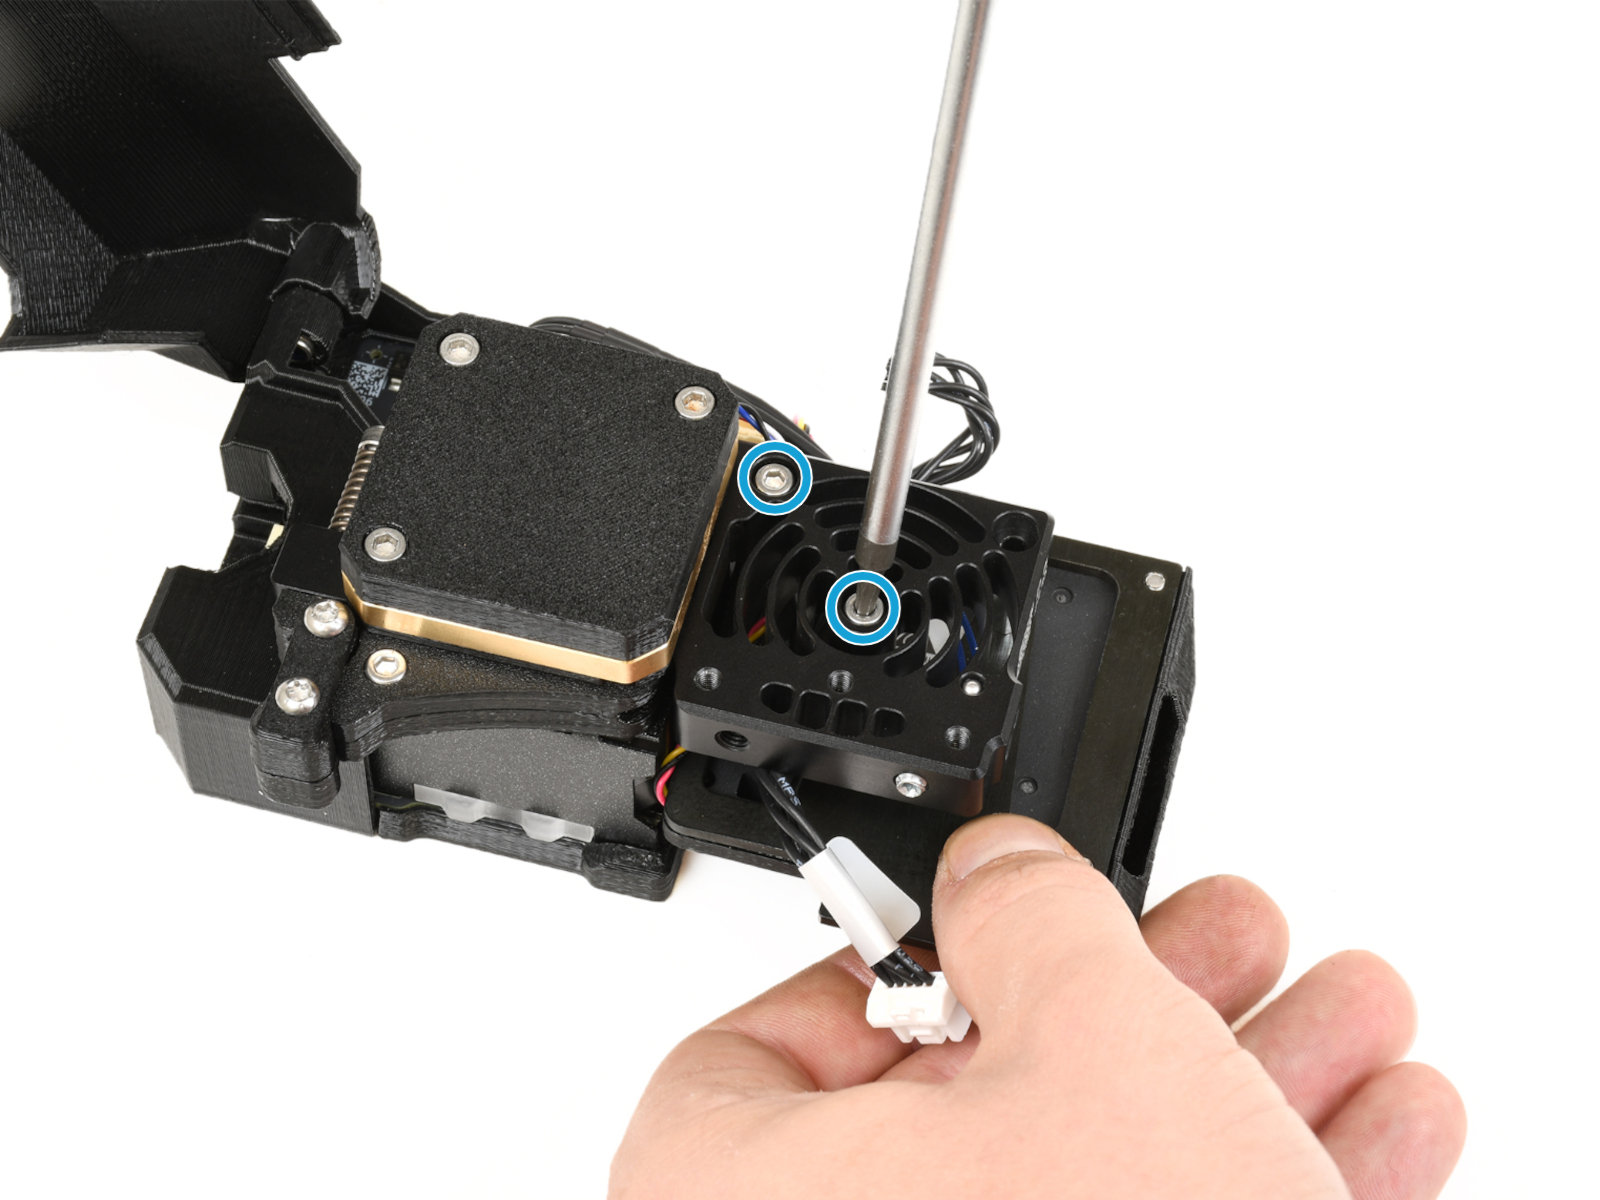 Připojení desky Tool changer &amp; sestavy tiskového ventilátoru.